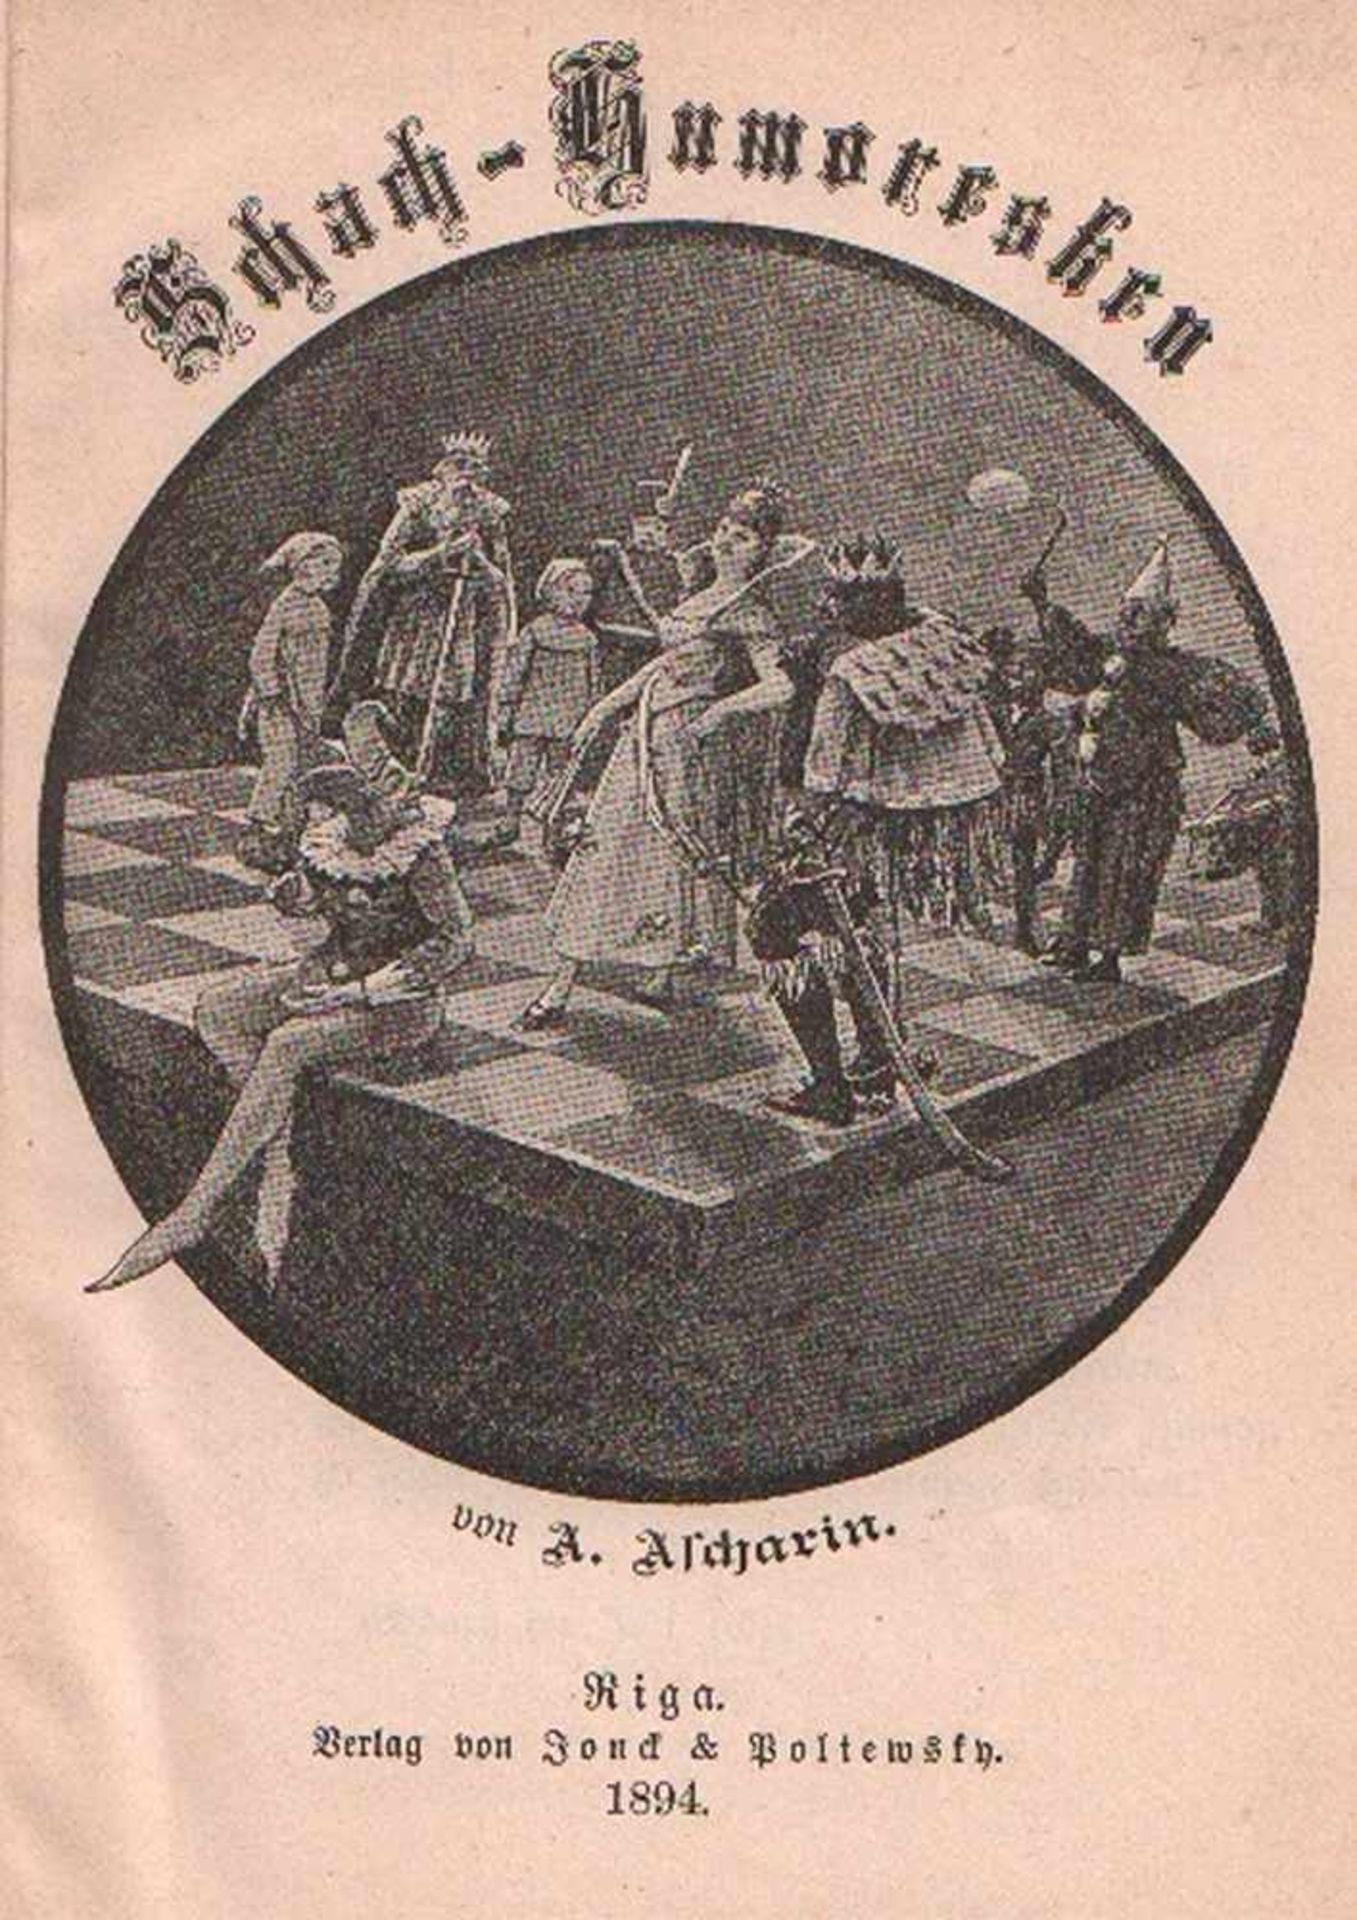 Ascharin, Andreas. Schach - Humoresken. Riga, Jonck & Poliewsky, 1894. 8°. Mit 1 Abbildung auf dem